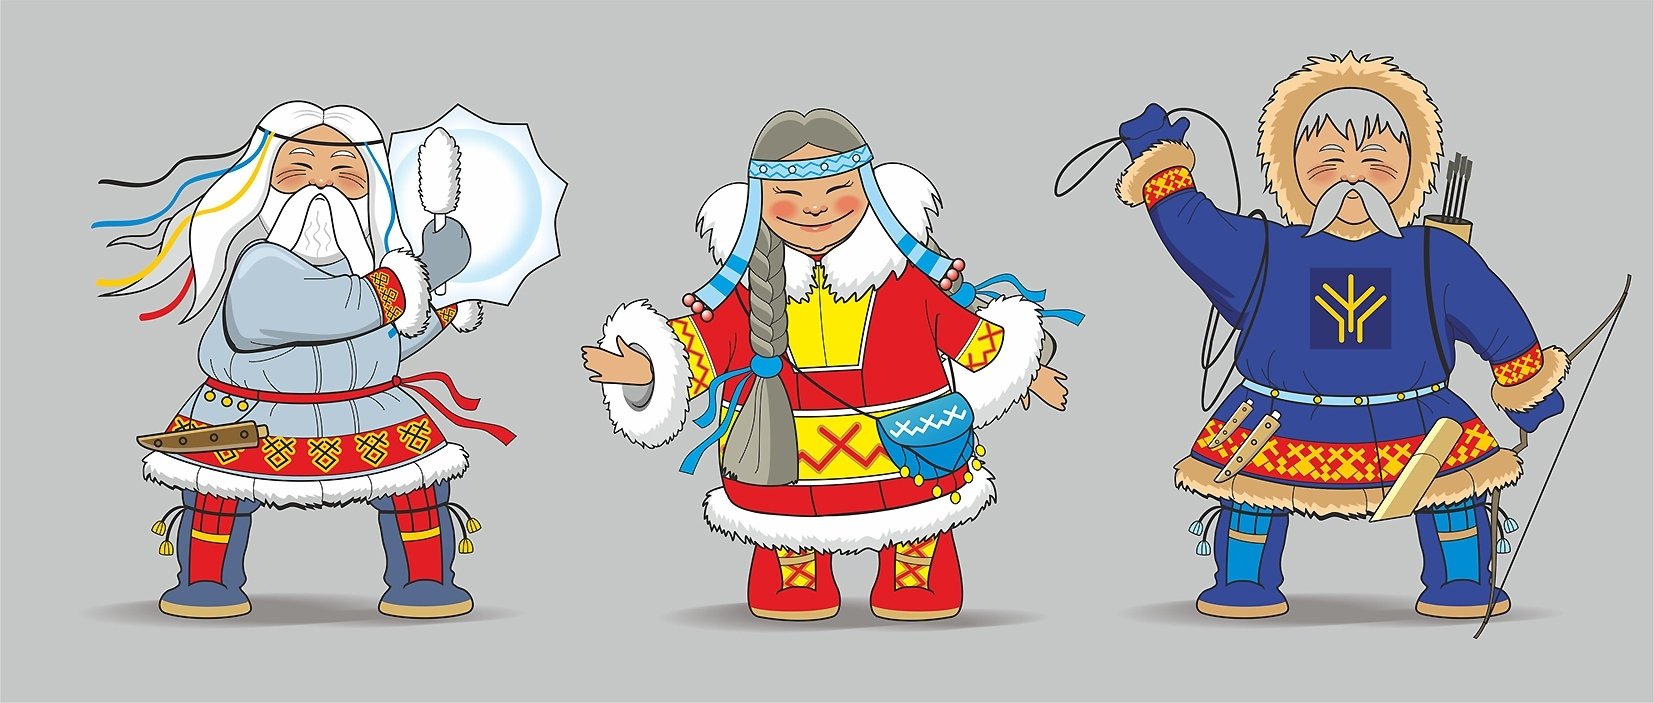 Якутские персонажи для детей